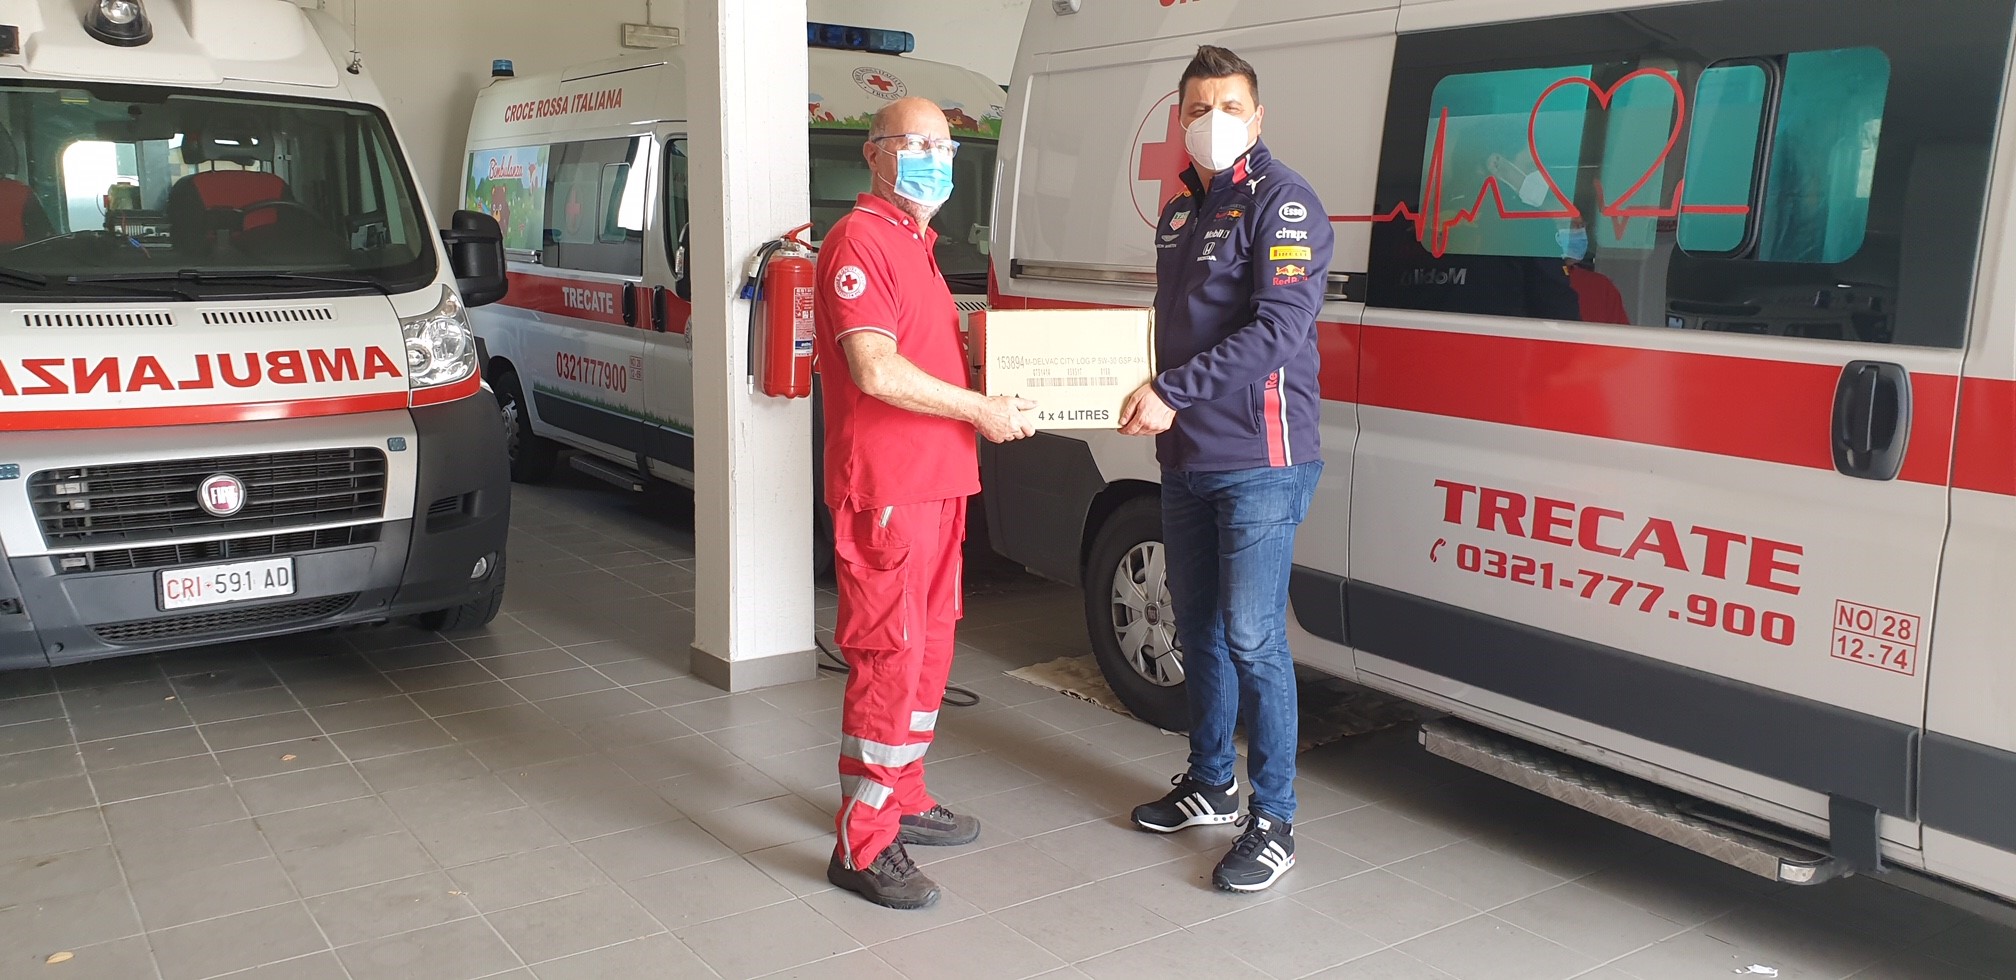 Prossima tappa  il Comitato della Croce Rossa di Trecate che riceve i lubrificanti Mobil DelvacTM per la manutenzione dei suoi mezzi di soccorso